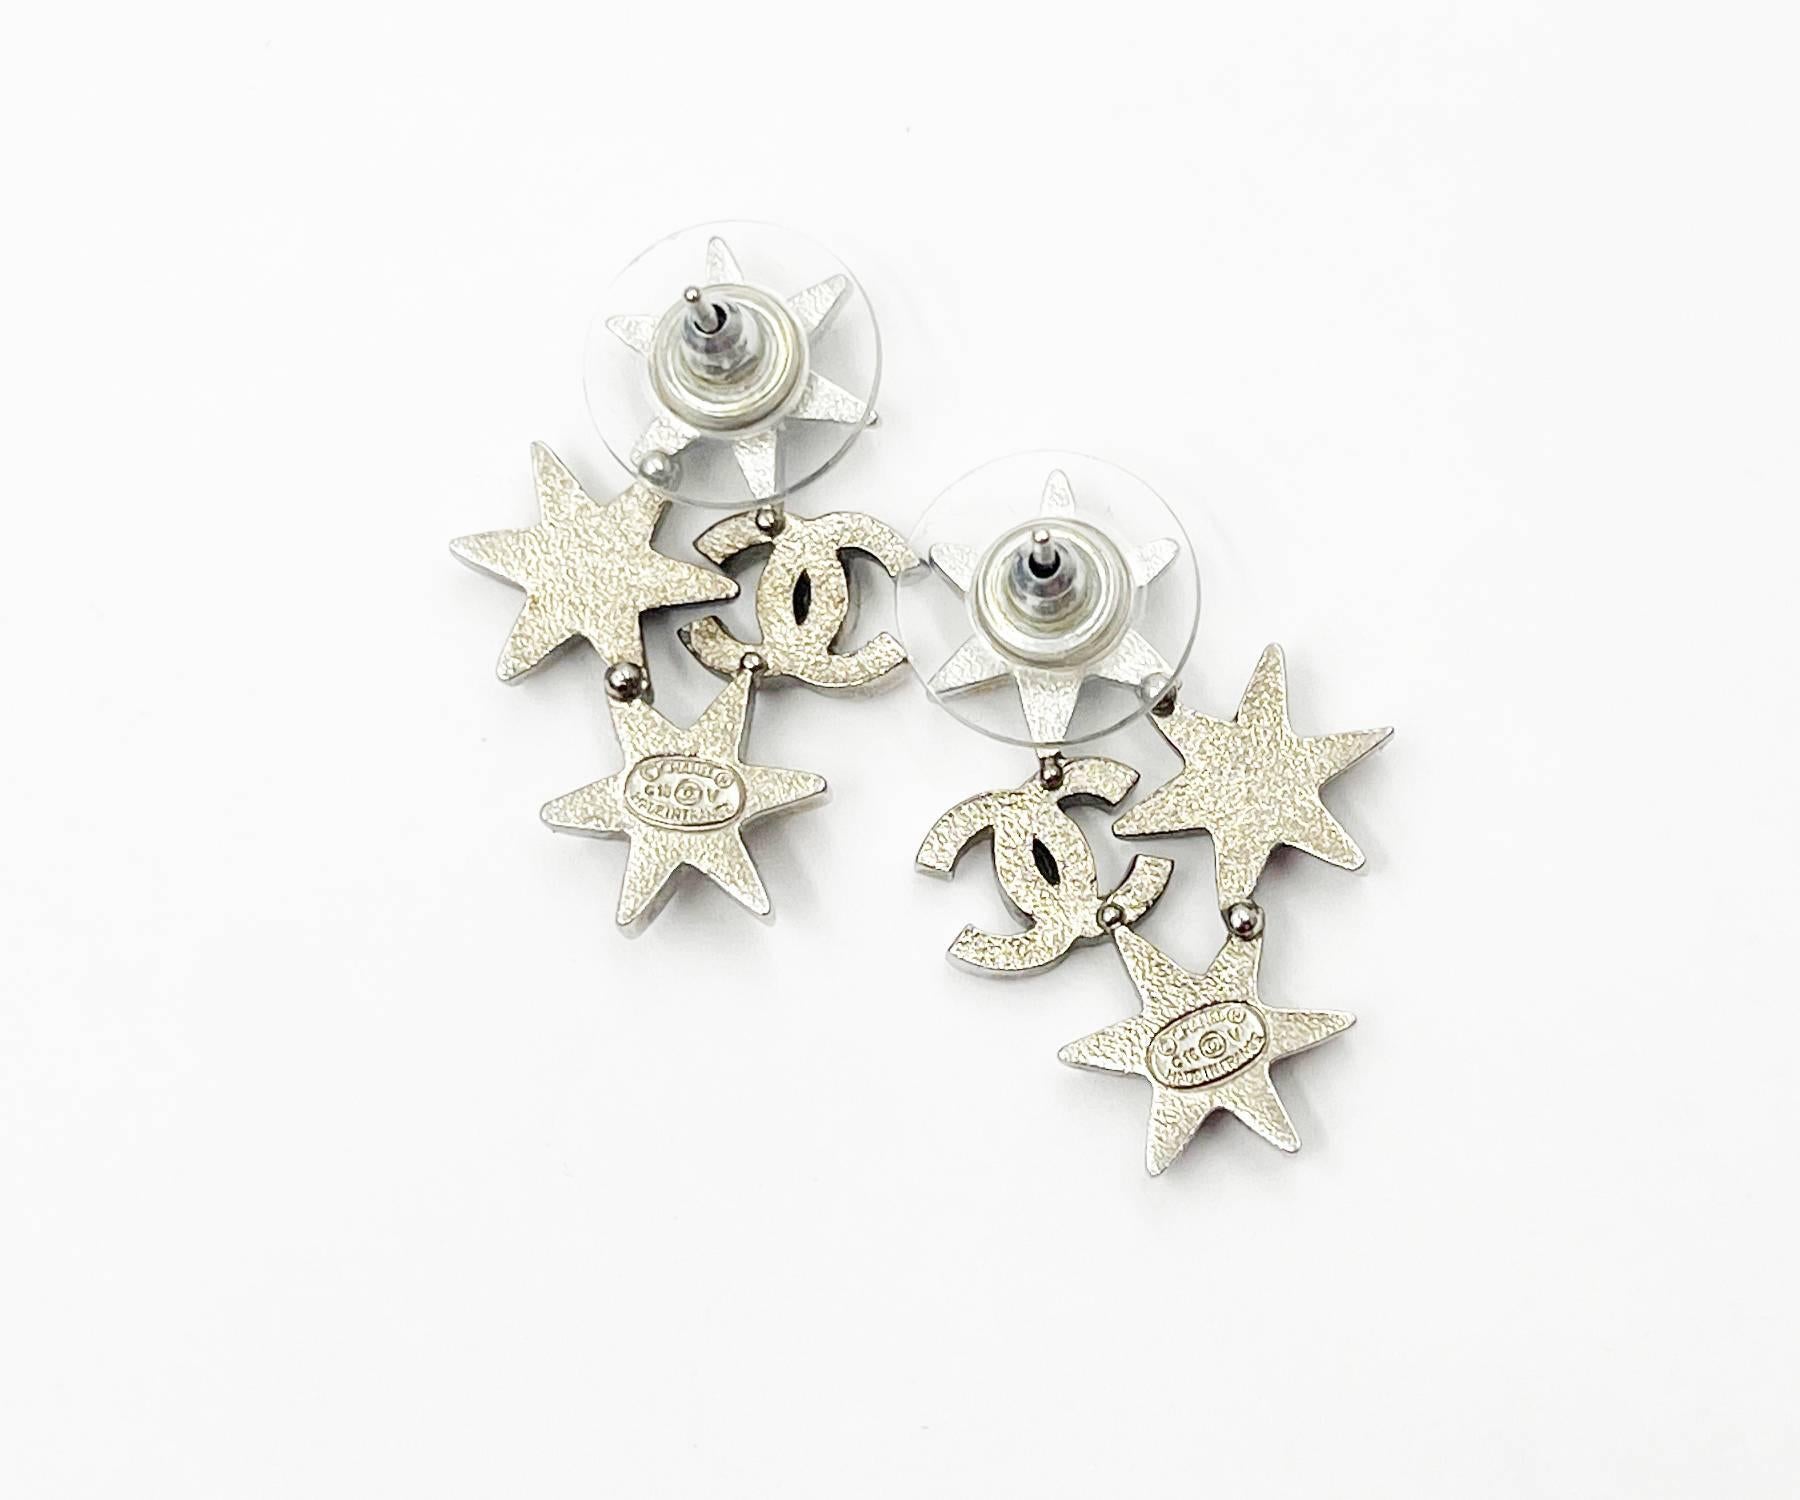 chanel star earrings